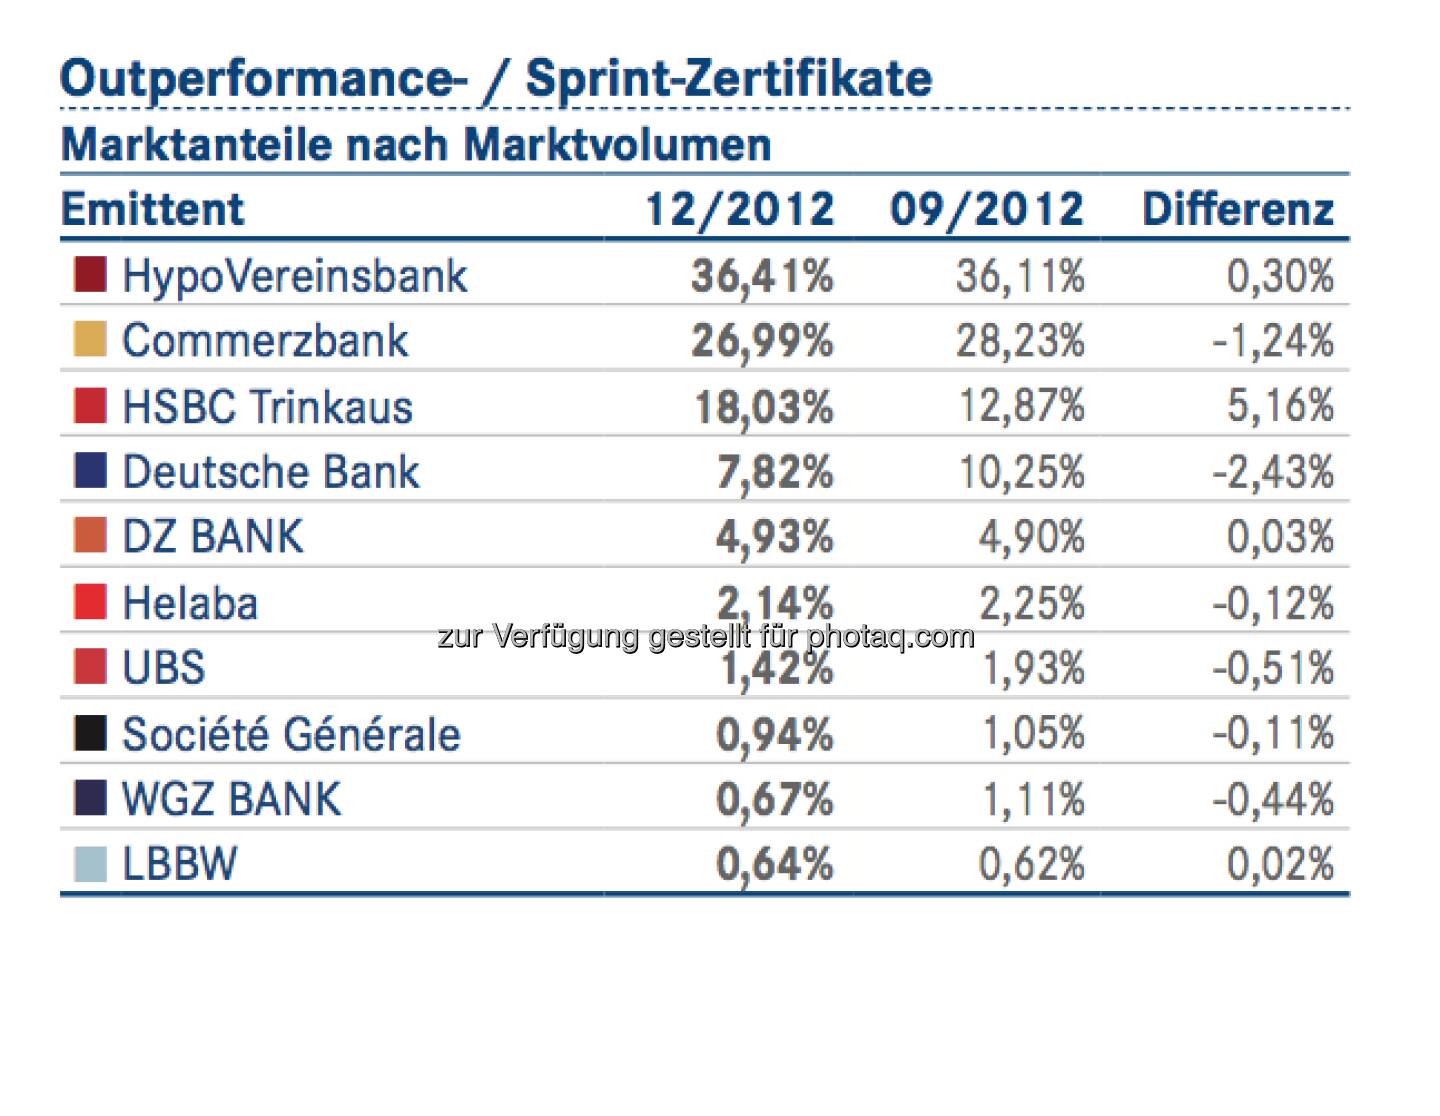 DDV-Statistik Ende 2012: HVB bei Outperformance- / Sprint-Zertifikaten vorne